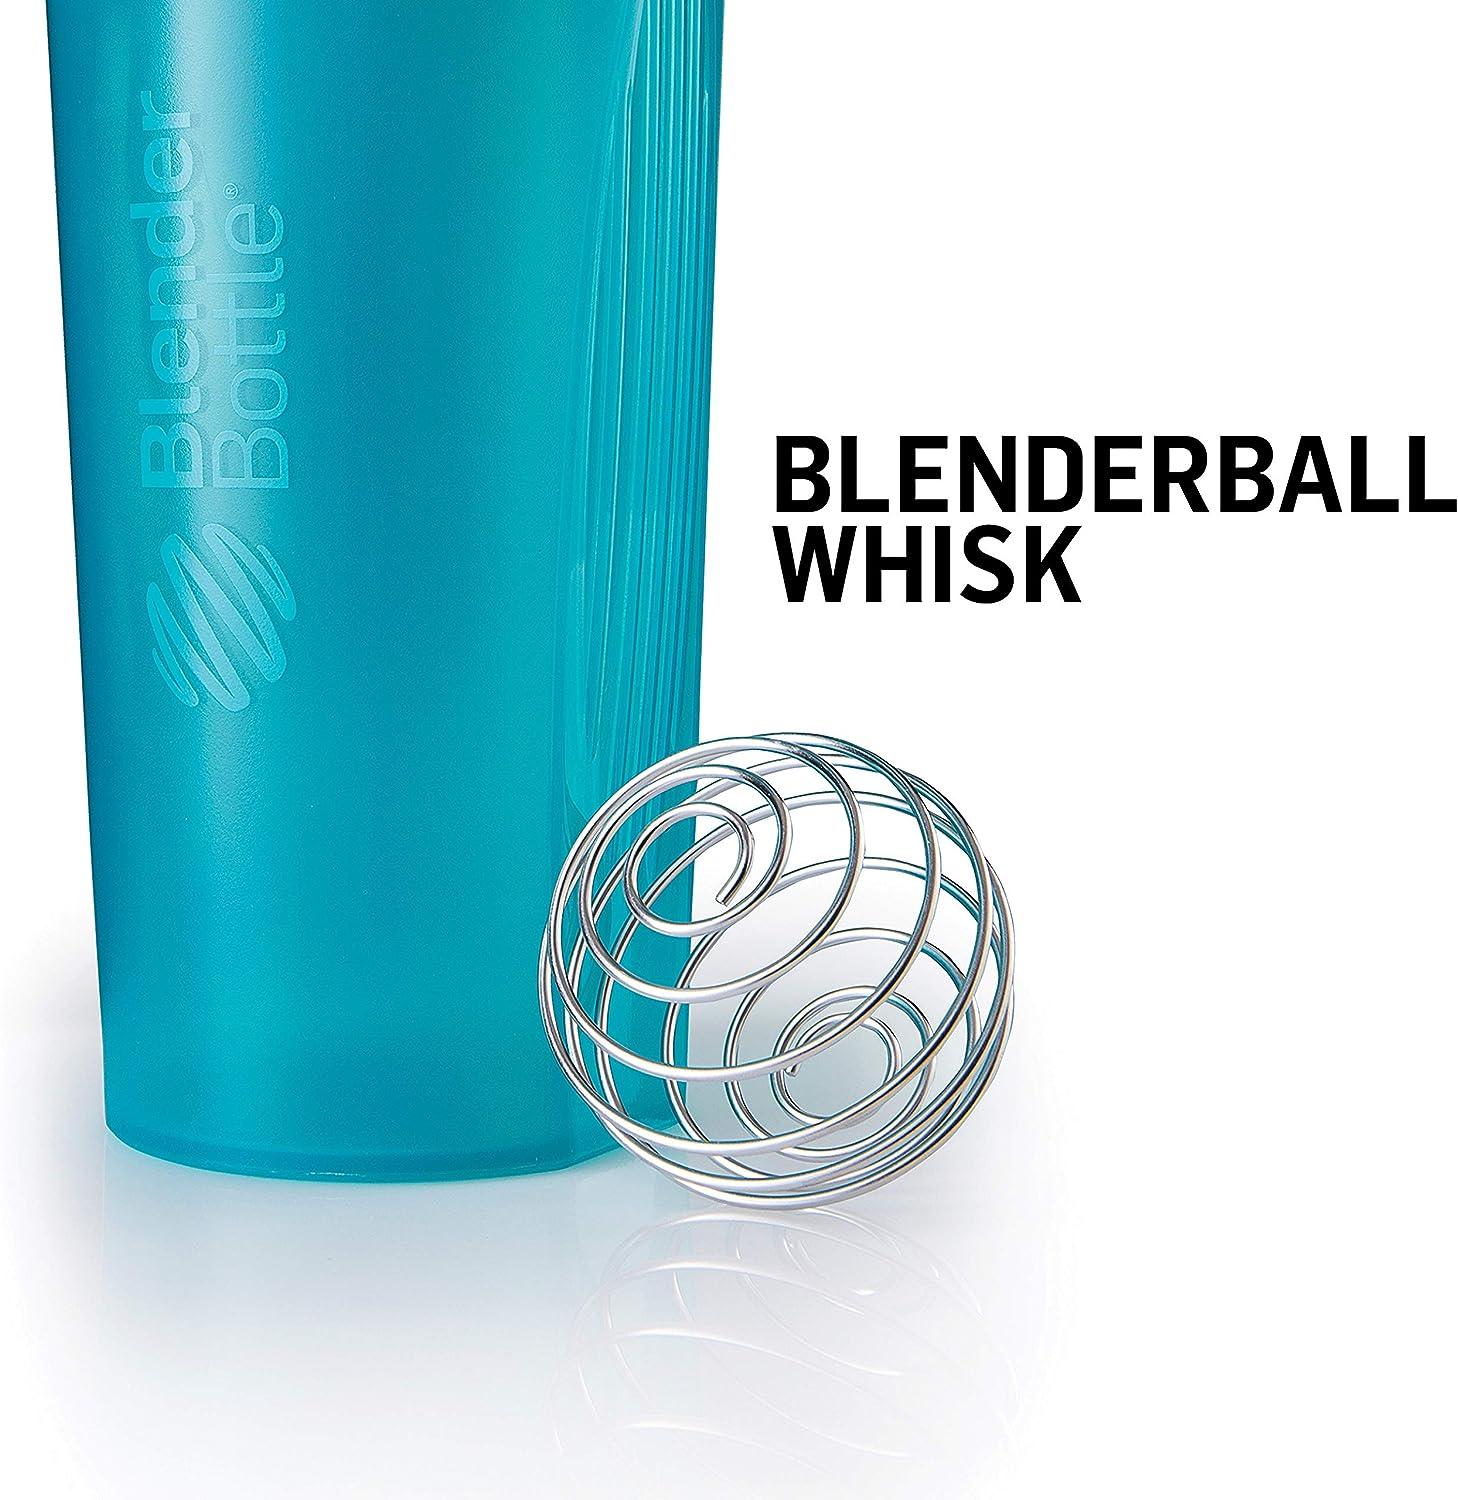  BlenderBottle Classic Shaker Bottle, 20 oz, Grey : Health &  Household